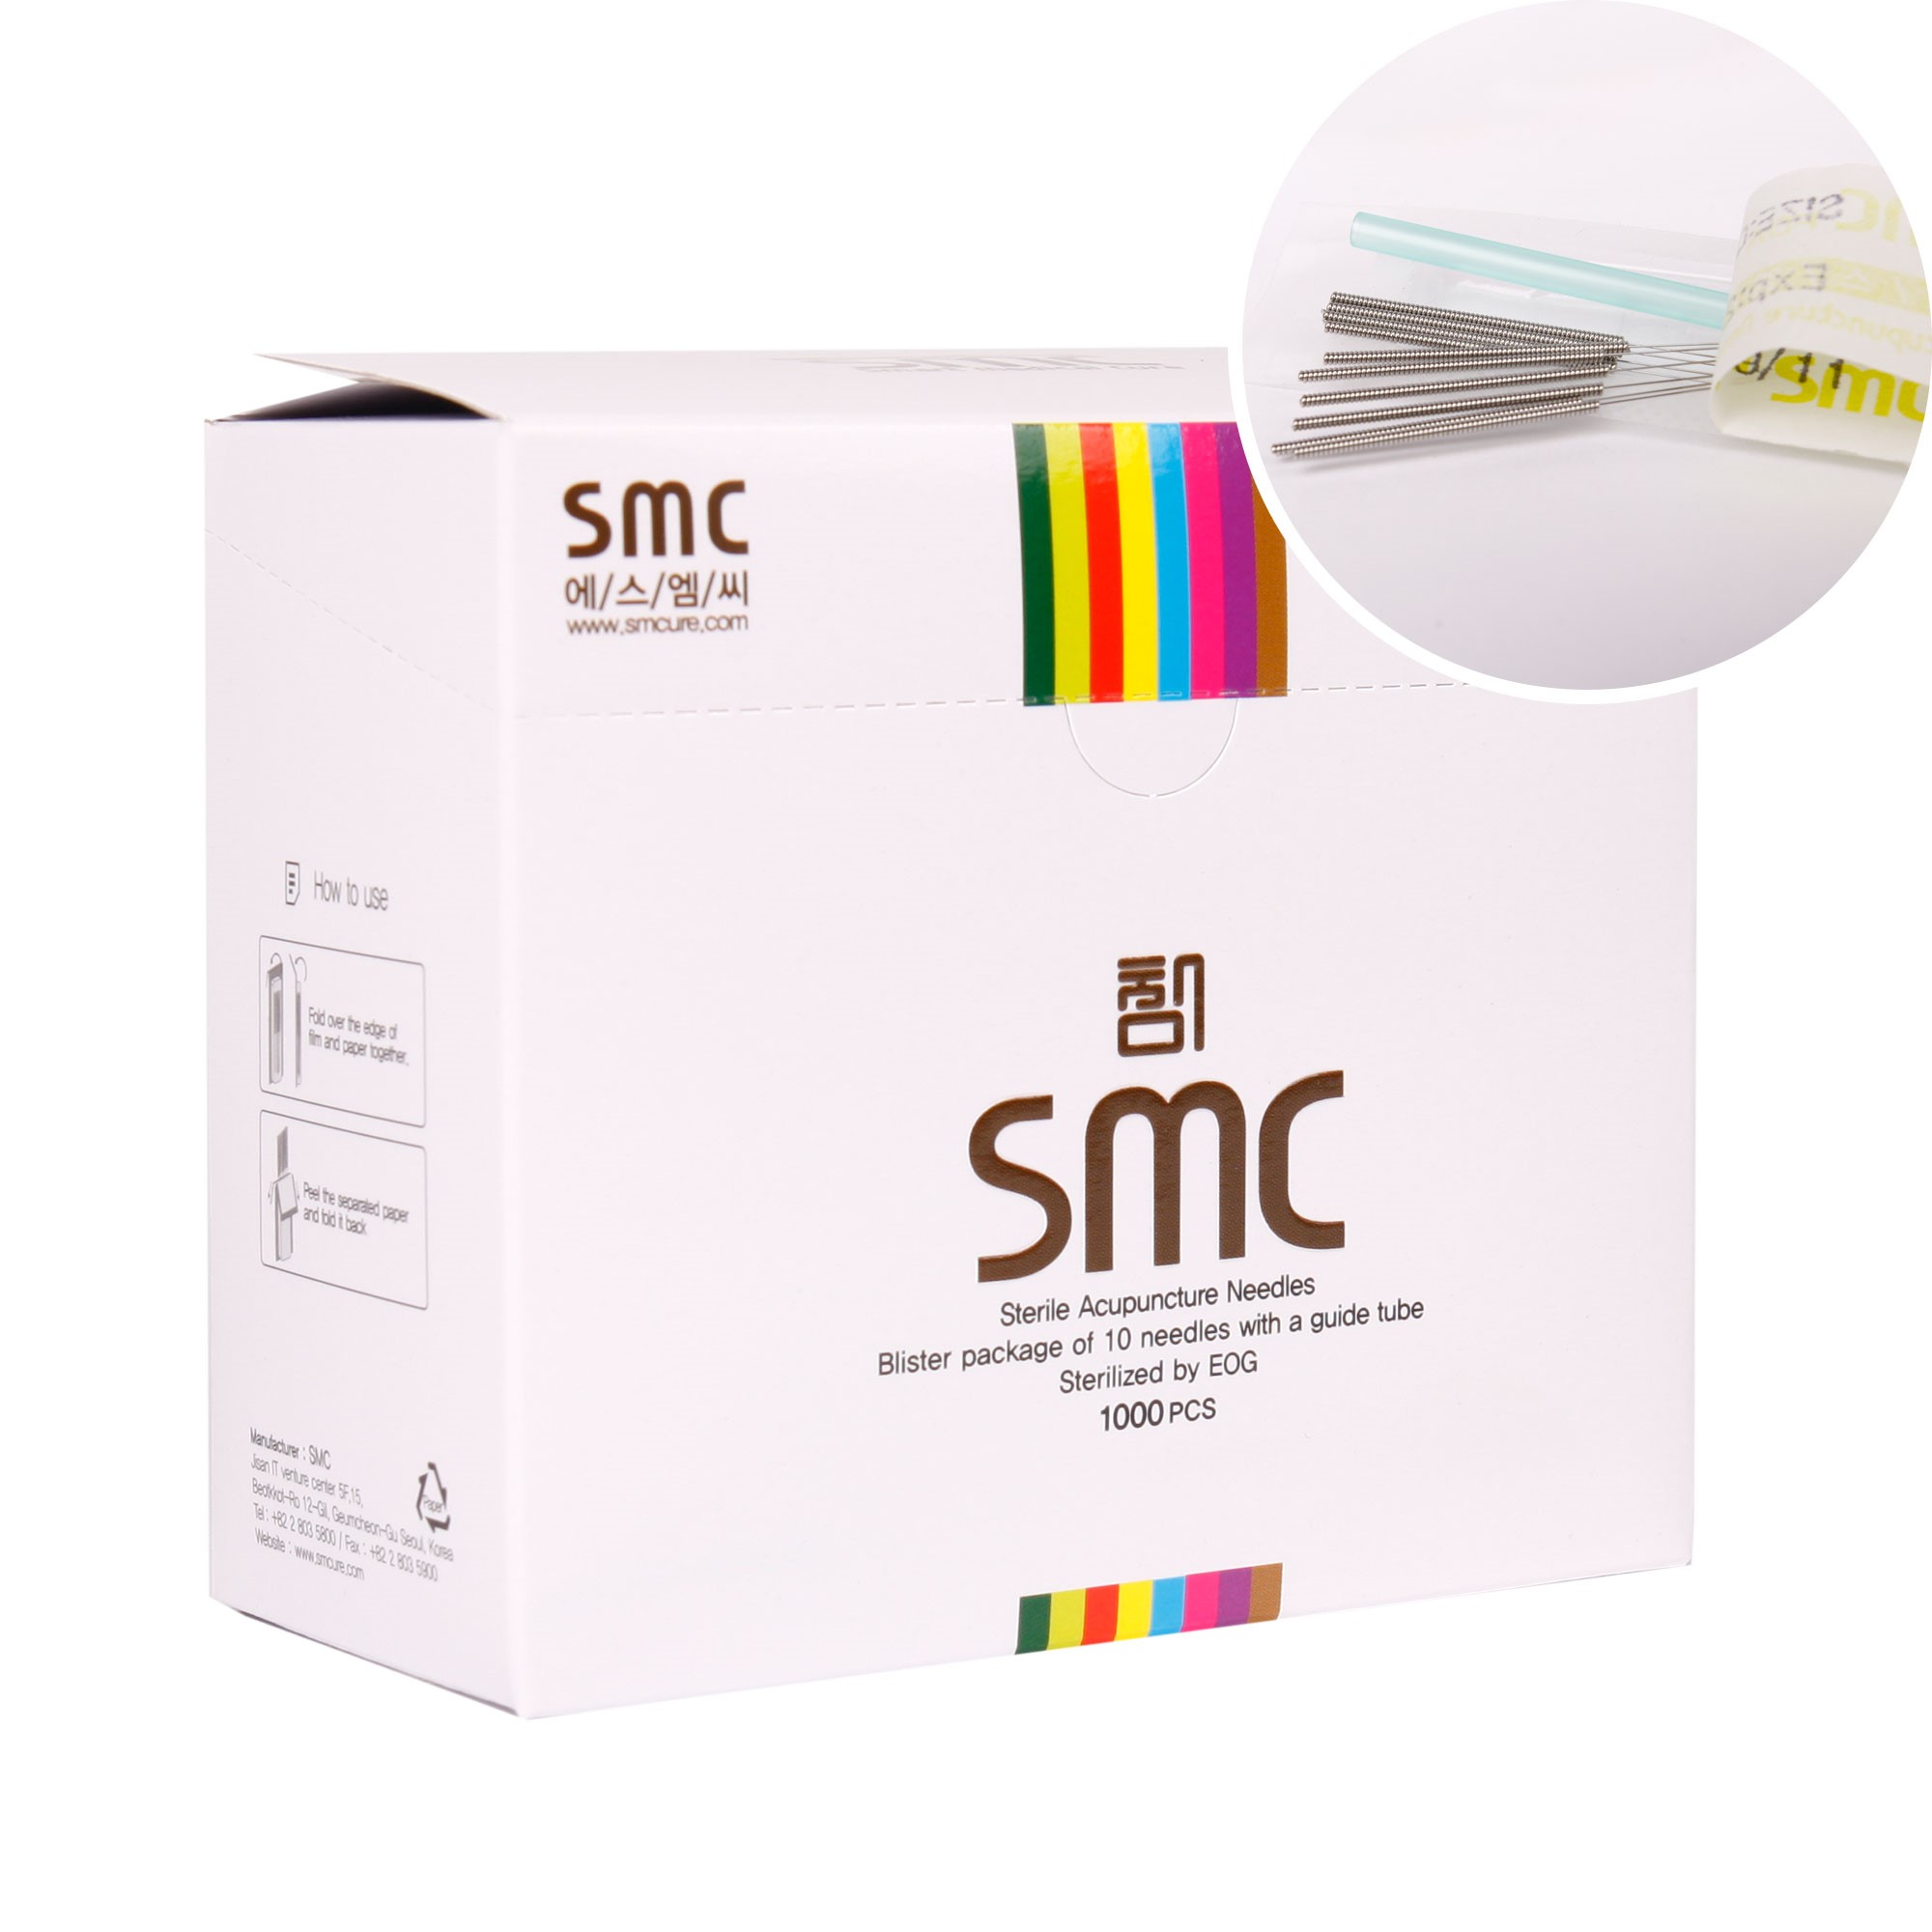 SMC Tek Tüplü Akupunktur Iğnesi 0.25 X 25mm